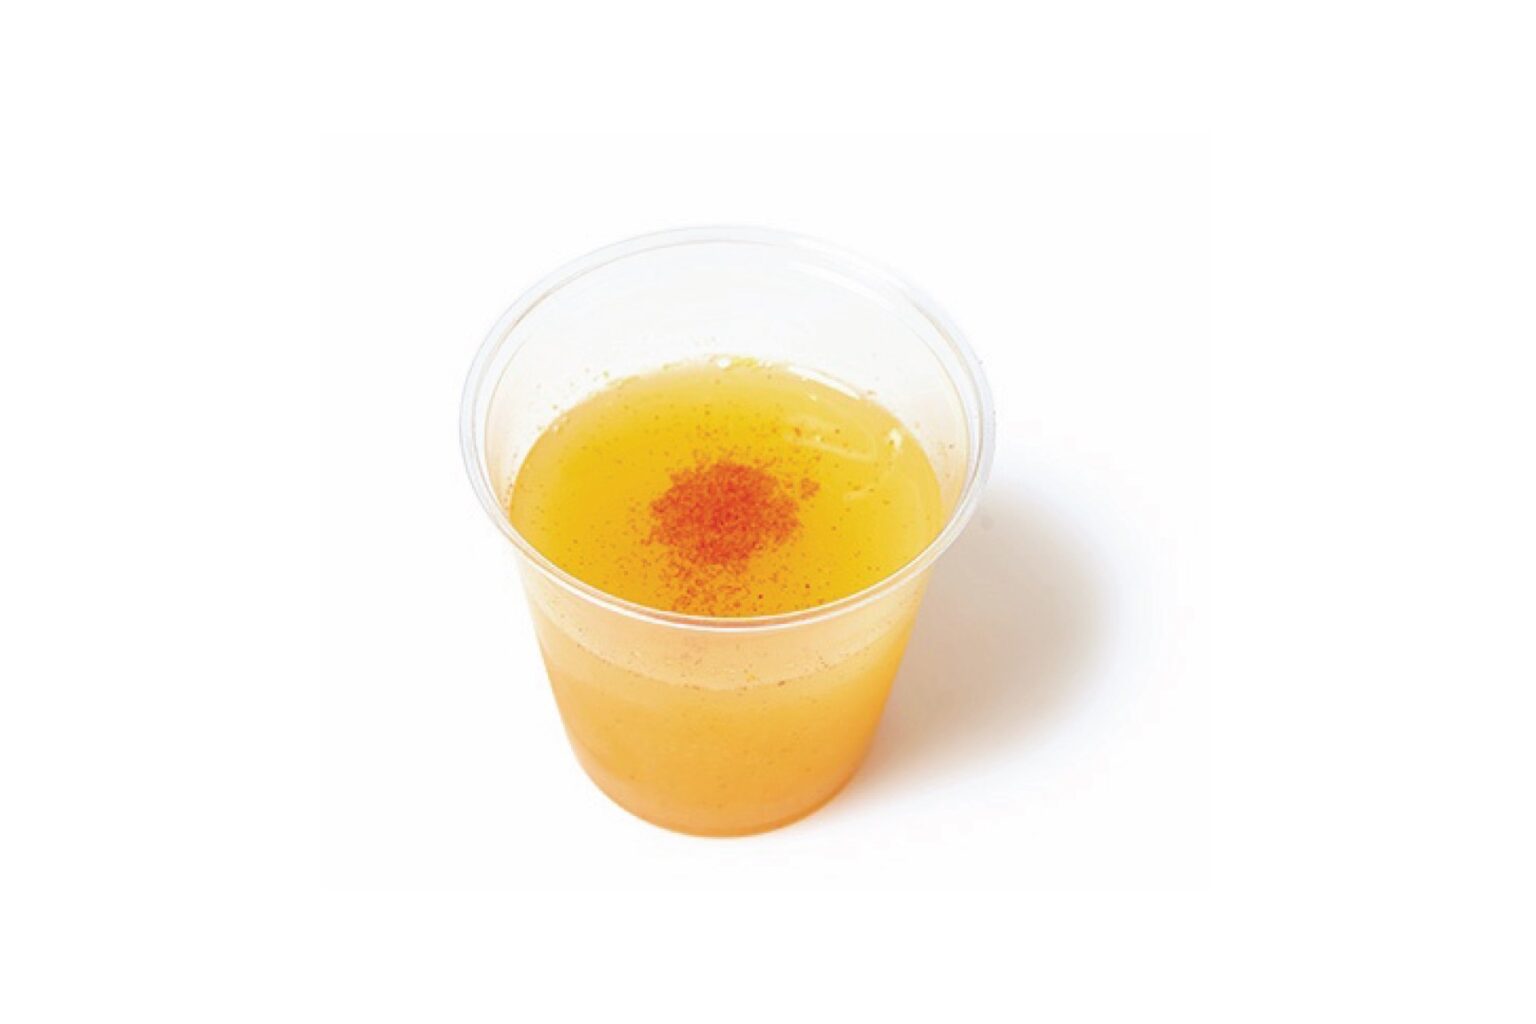 朝、ジンジャーのショットを飲む人が増えている。ピリリと辛く、目覚めに。ジンジャーオレンジカイエン390円。